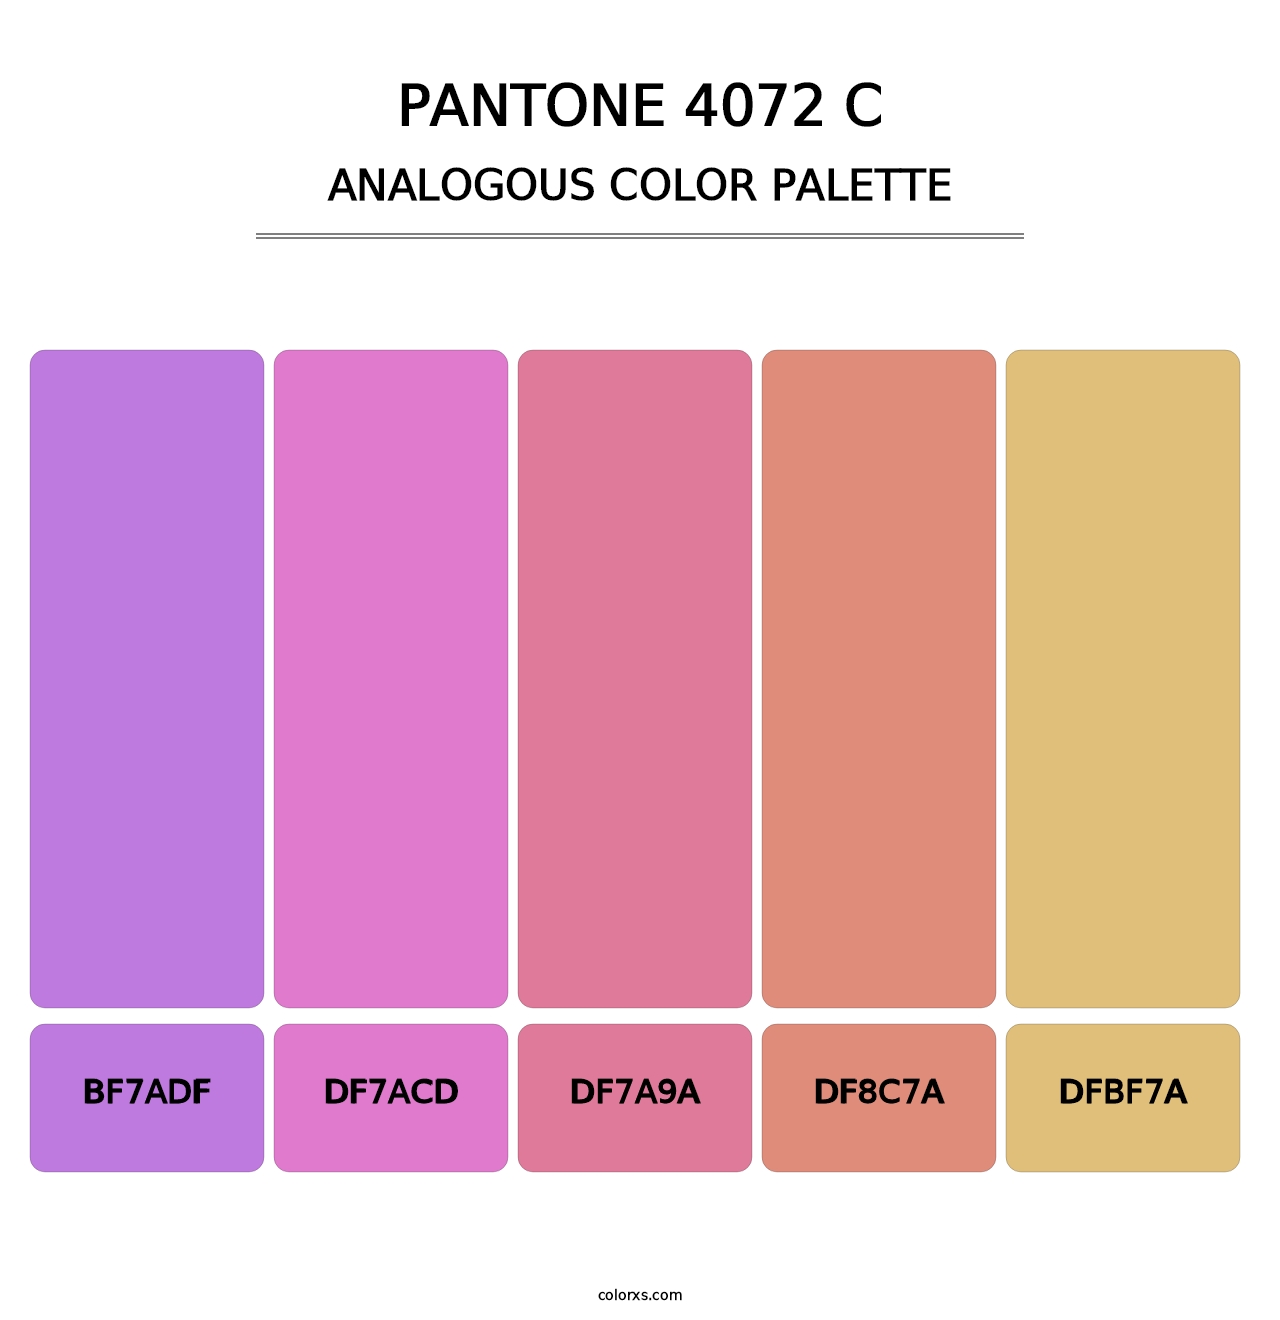 PANTONE 4072 C - Analogous Color Palette